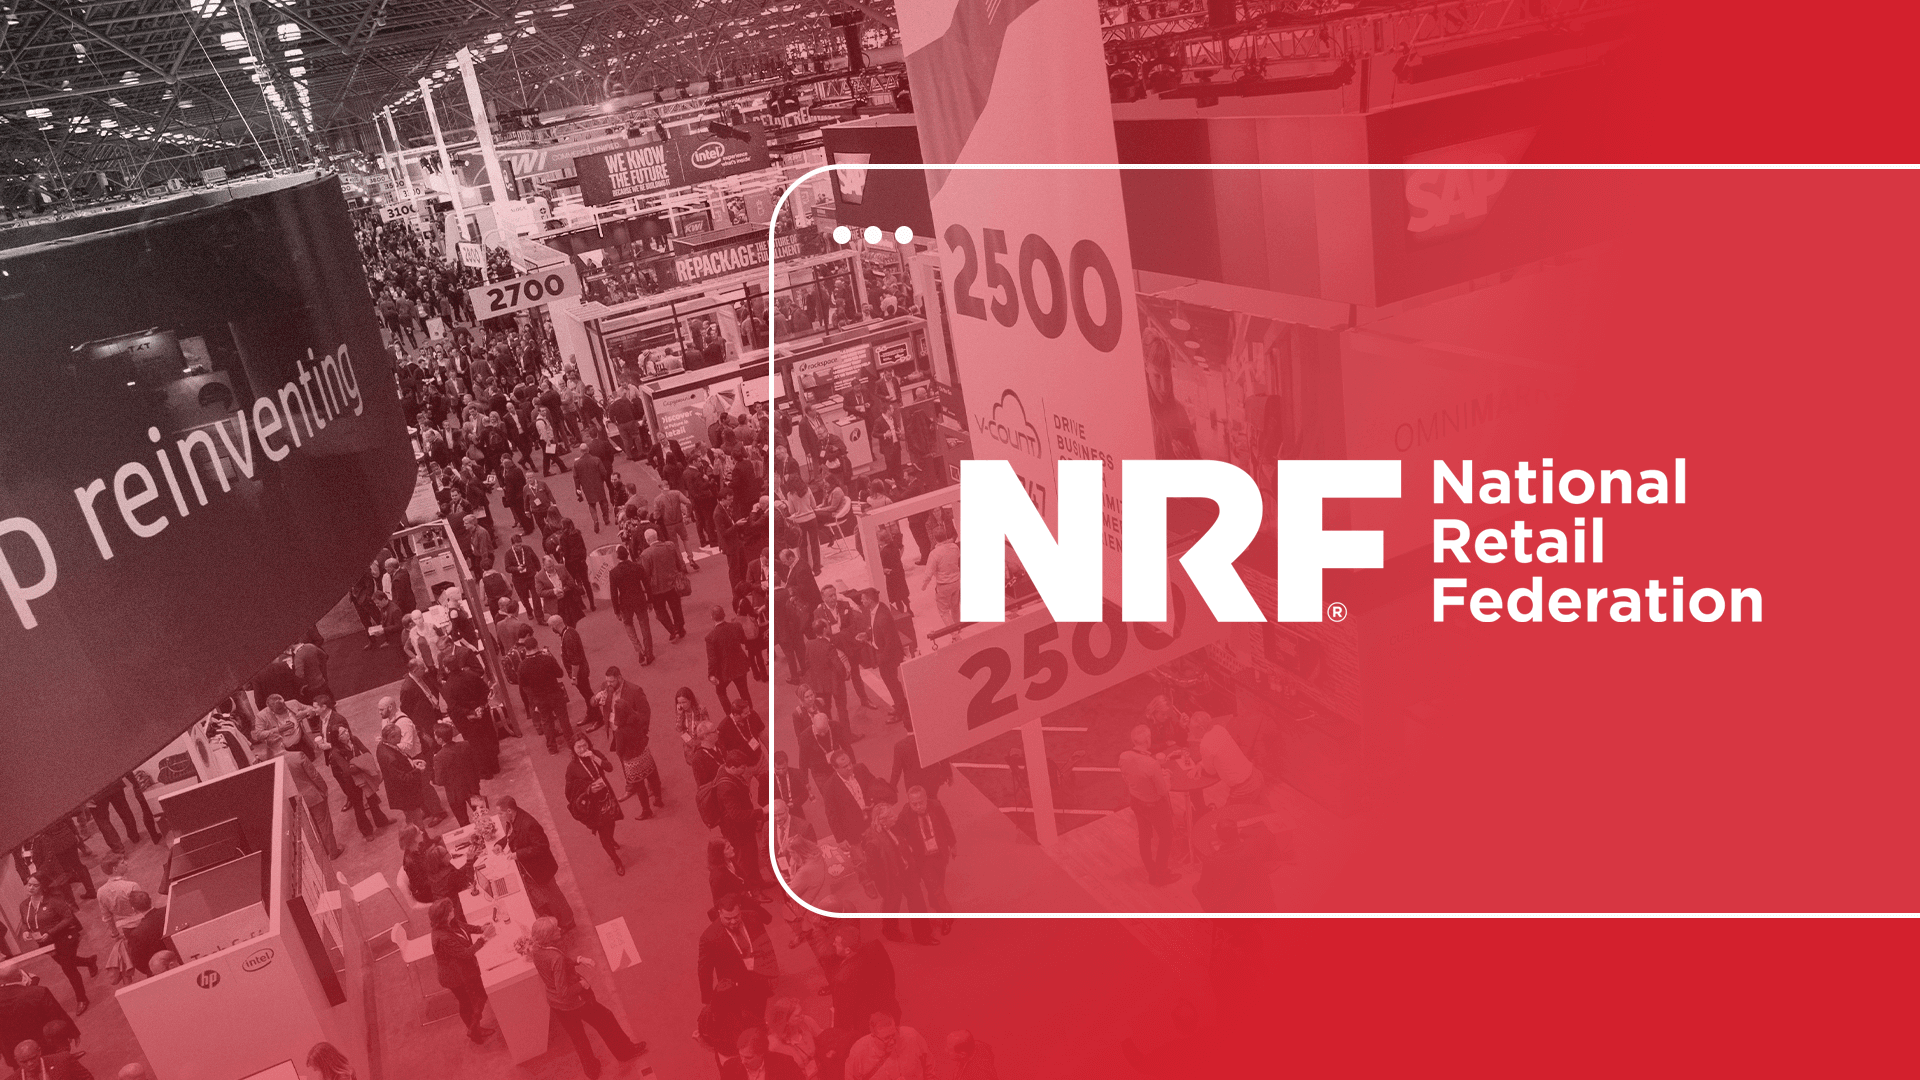 Descubra tudo sobre a National Retail Federation (NRF), o maior evento de varejo do mundo e como ele influencia o futuro do setor.